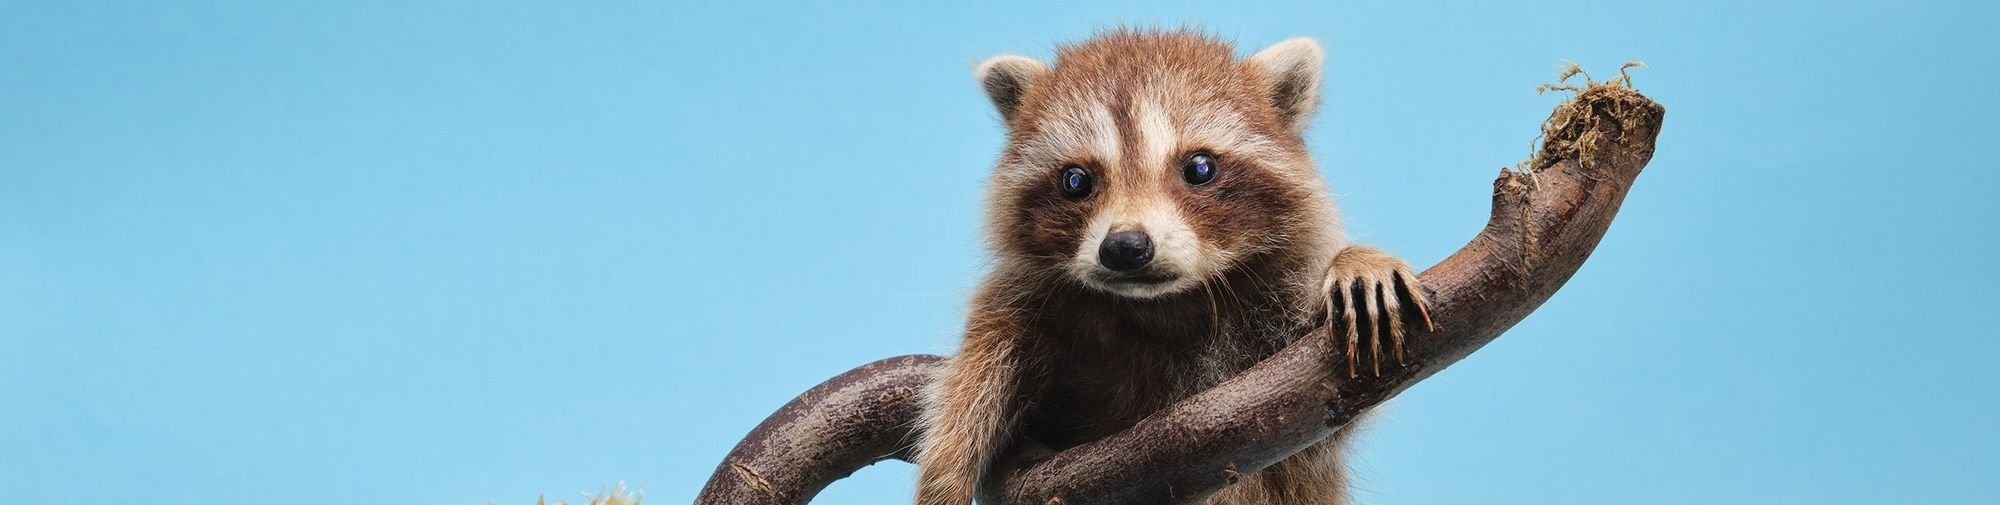 NHMB-SEXY raccoon, cub_Naturkundliche Sammlung Liechtenstein (c) Tristesse